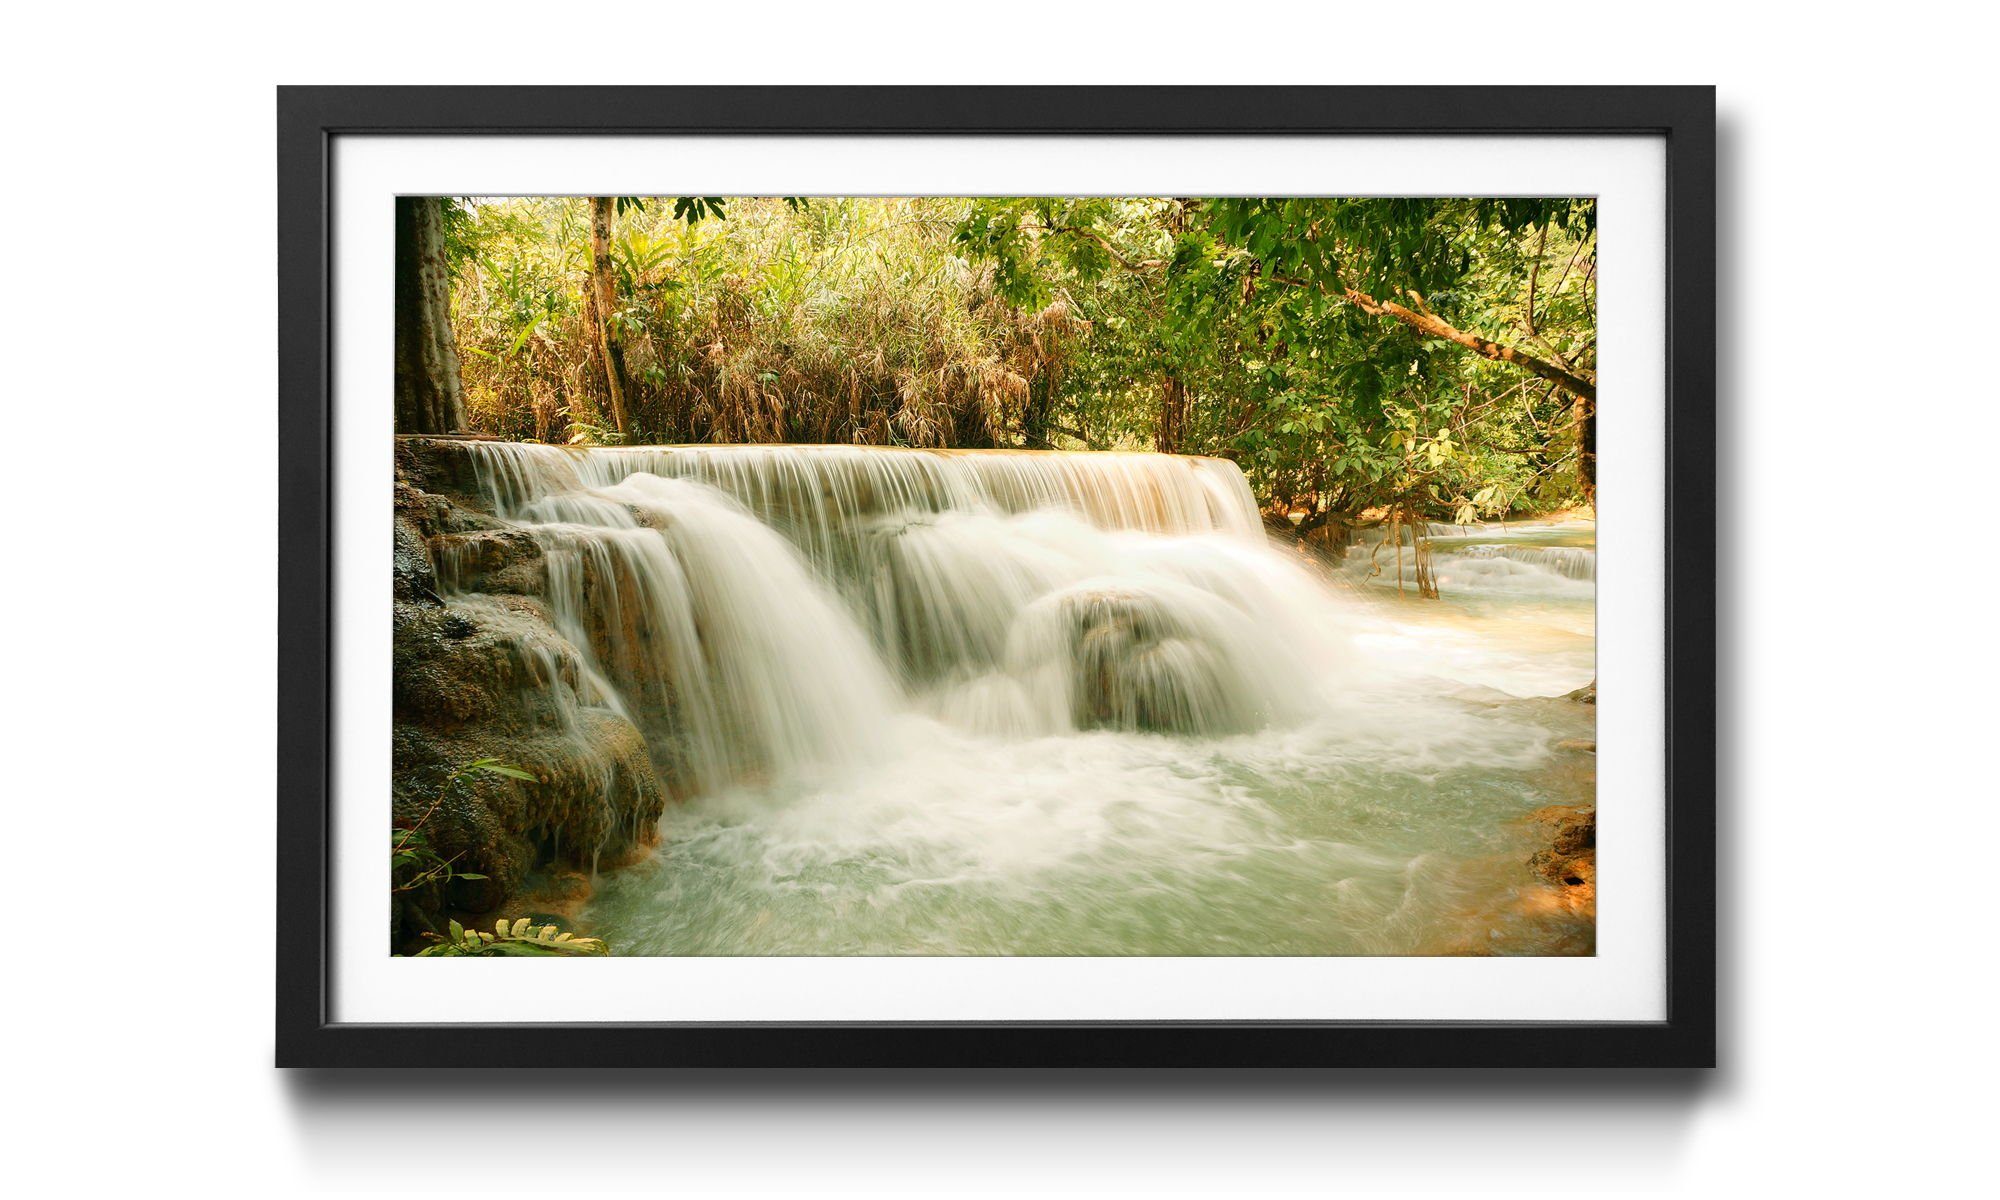 WandbilderXXL Wandbild, 4 the in in Bild mit Jungle, Wasserfall, Rahmen Größen Waterfall erhältlich